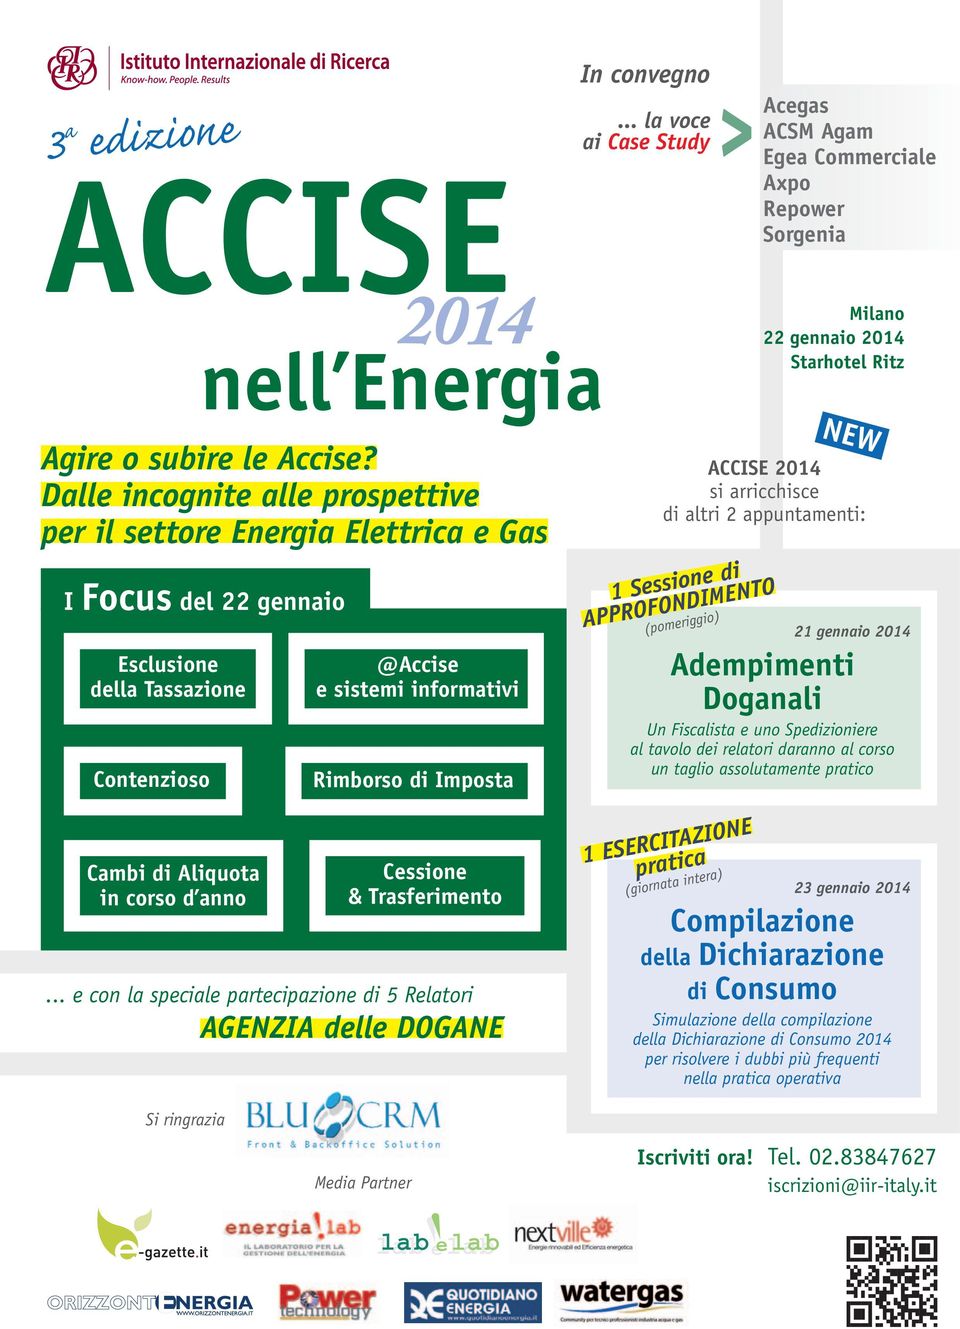 .. la voce ai > Acegas ACSM Agam Egea Commerciale Axpo Repower Sorgenia Milano 22 gennaio 2014 Starhotel Ritz ACCISE 2014 si arricchisce di altri 2 appuntamenti: 1 Sessione di APPROFONDIMENTO